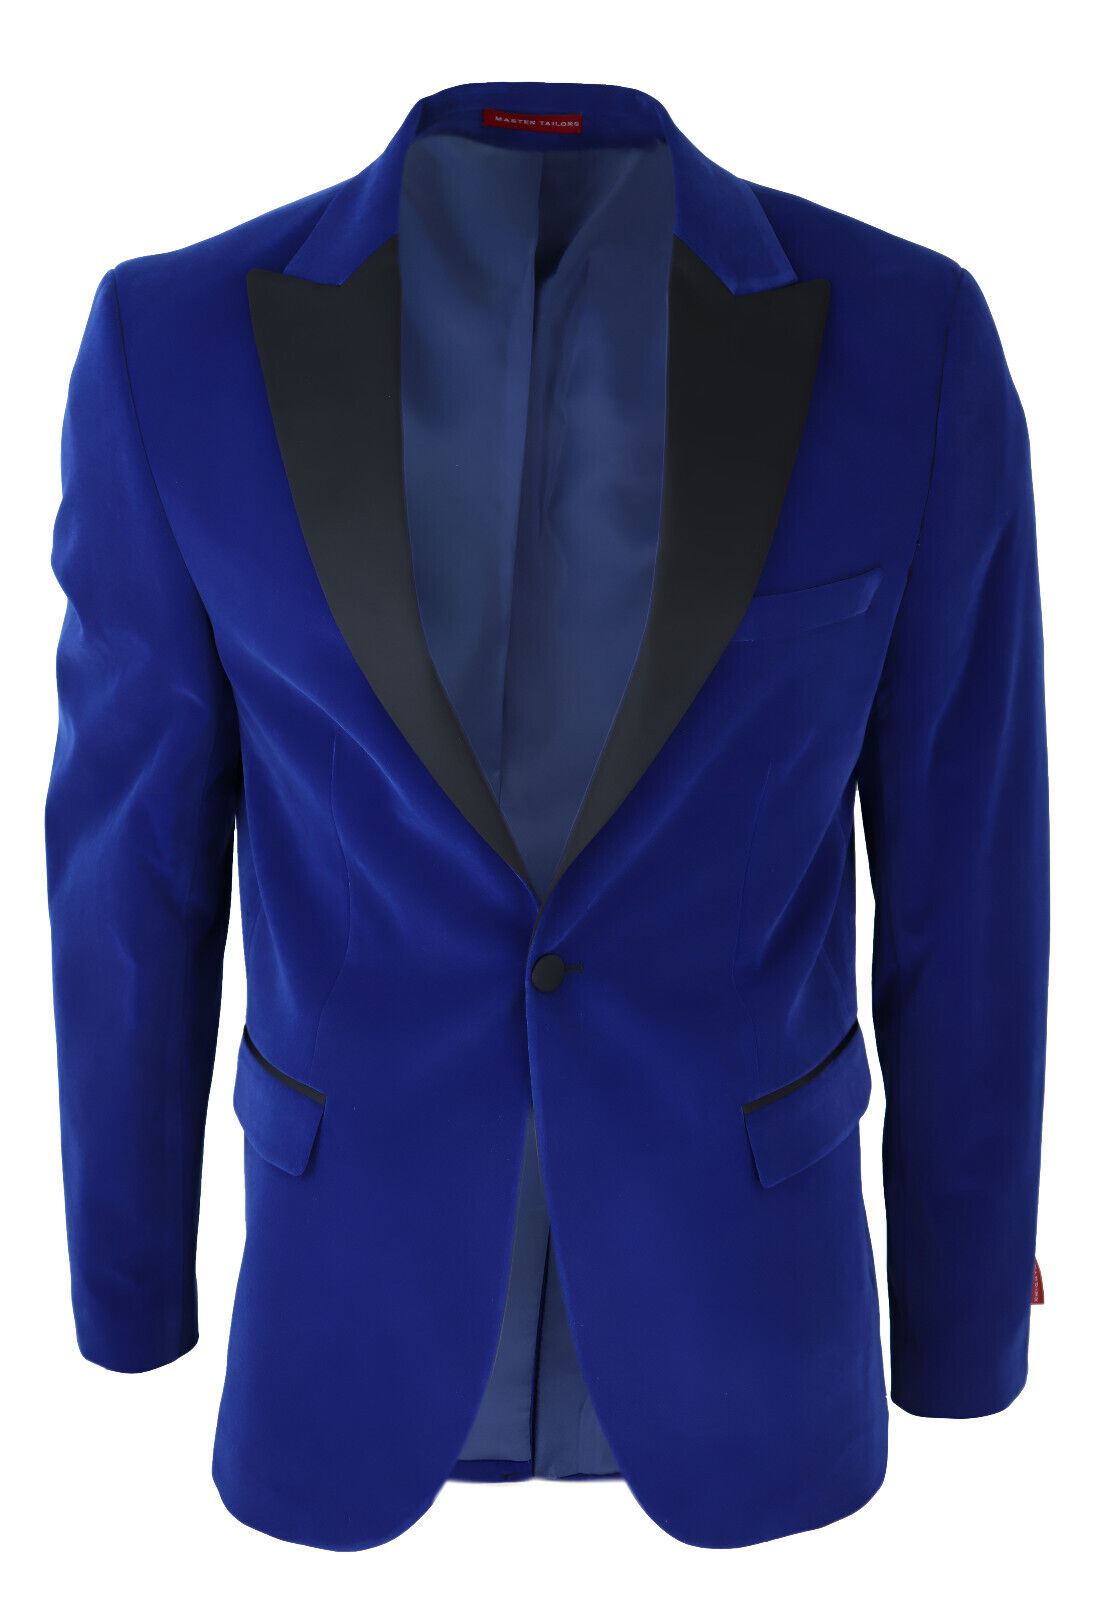 Mens Blue Velvet Dinner Tuxedo Suit Jacket Blazer - Upperclass Fashions 